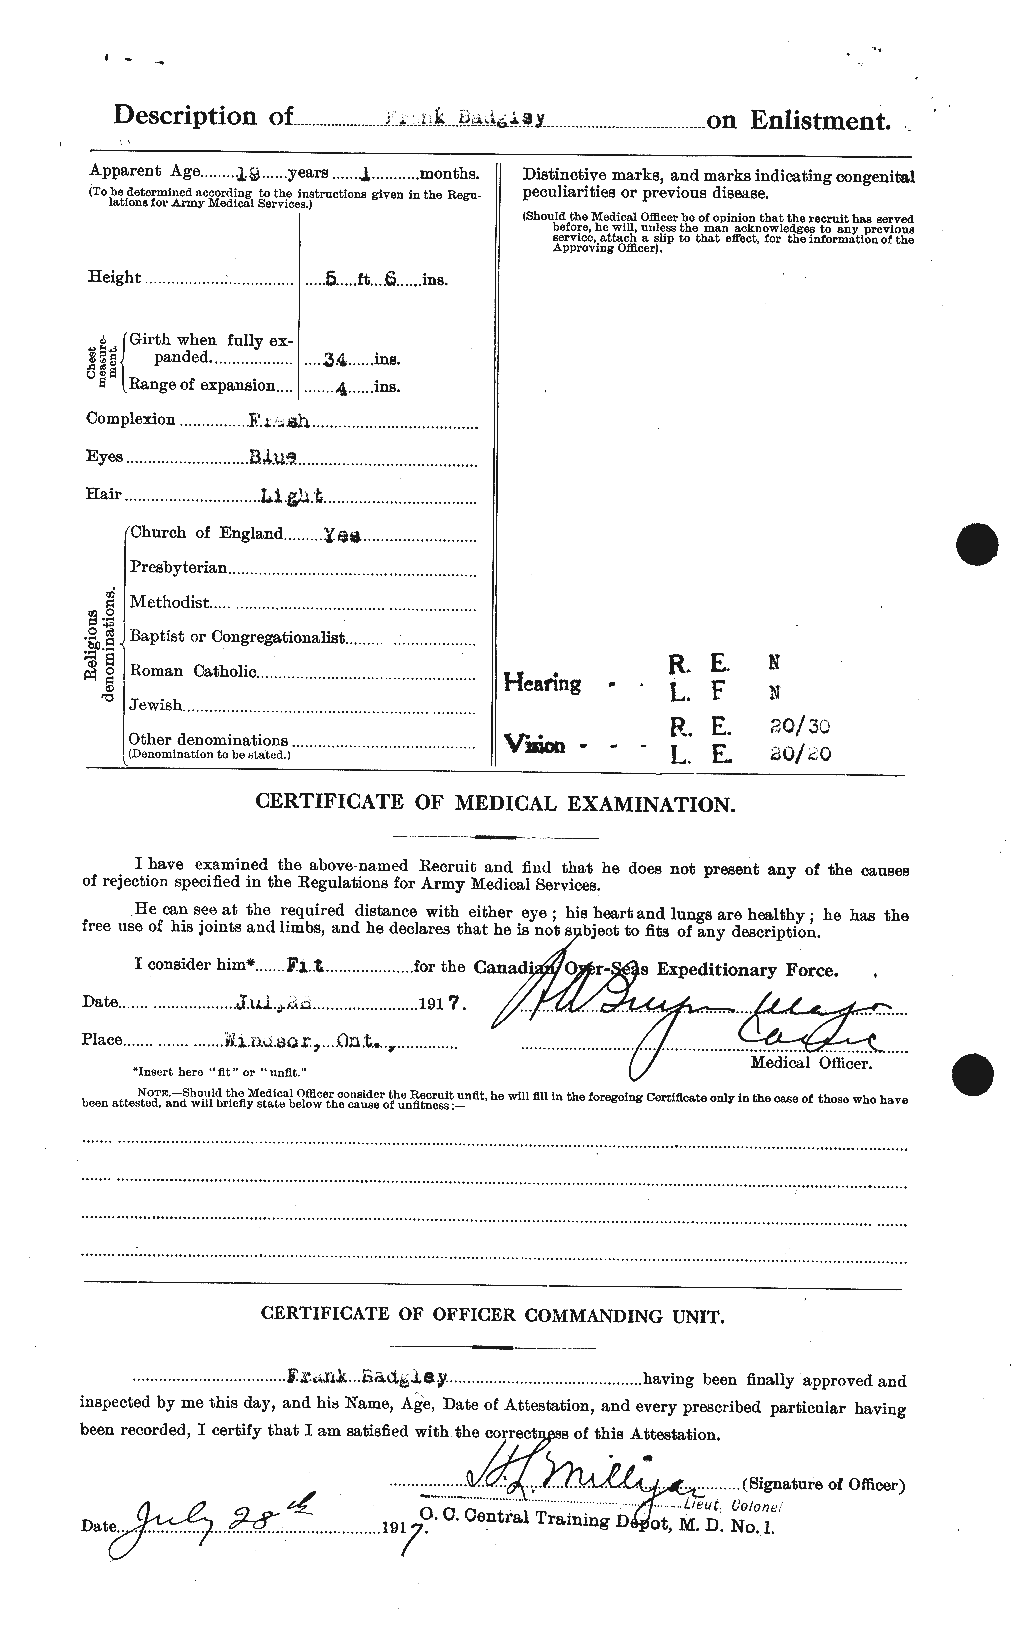 Dossiers du Personnel de la Première Guerre mondiale - CEC 217730b